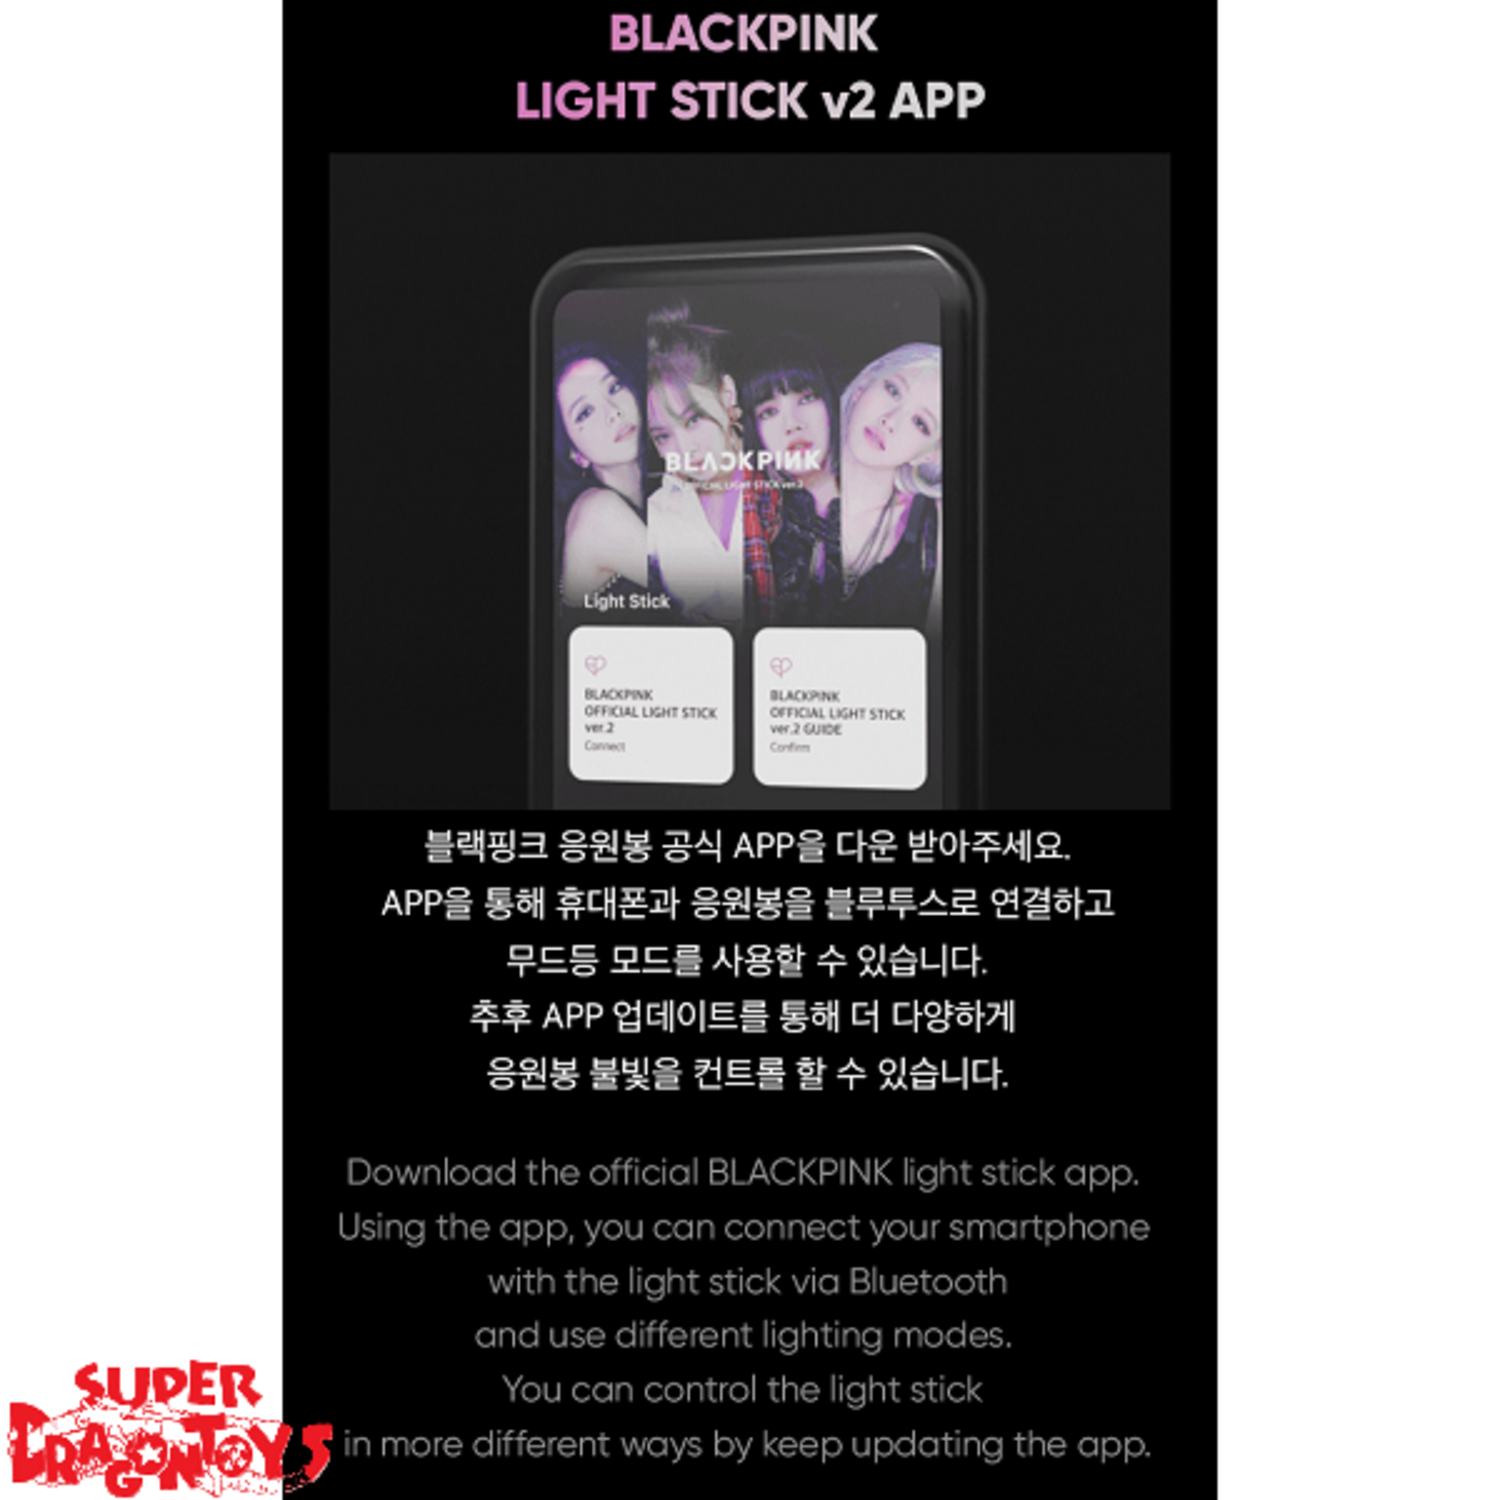 BLACKPINK - Official Light Stick